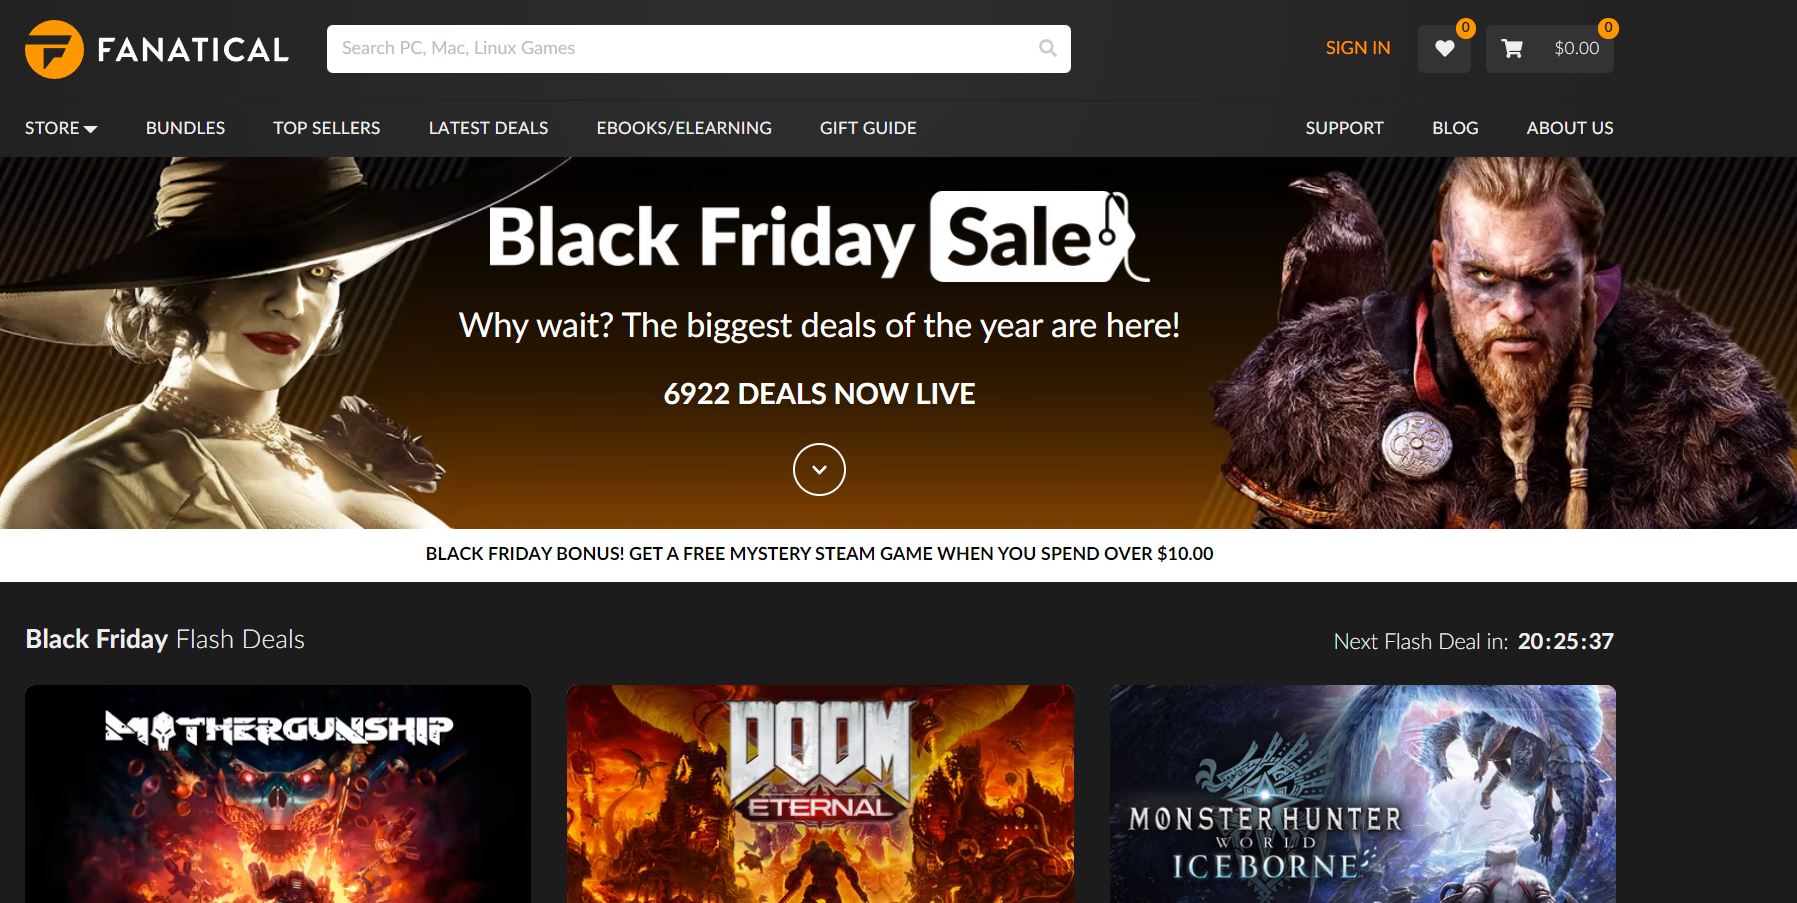 Bethesda, Capcom, Ubisoft & more big names join Fanatical Black Friday Sale